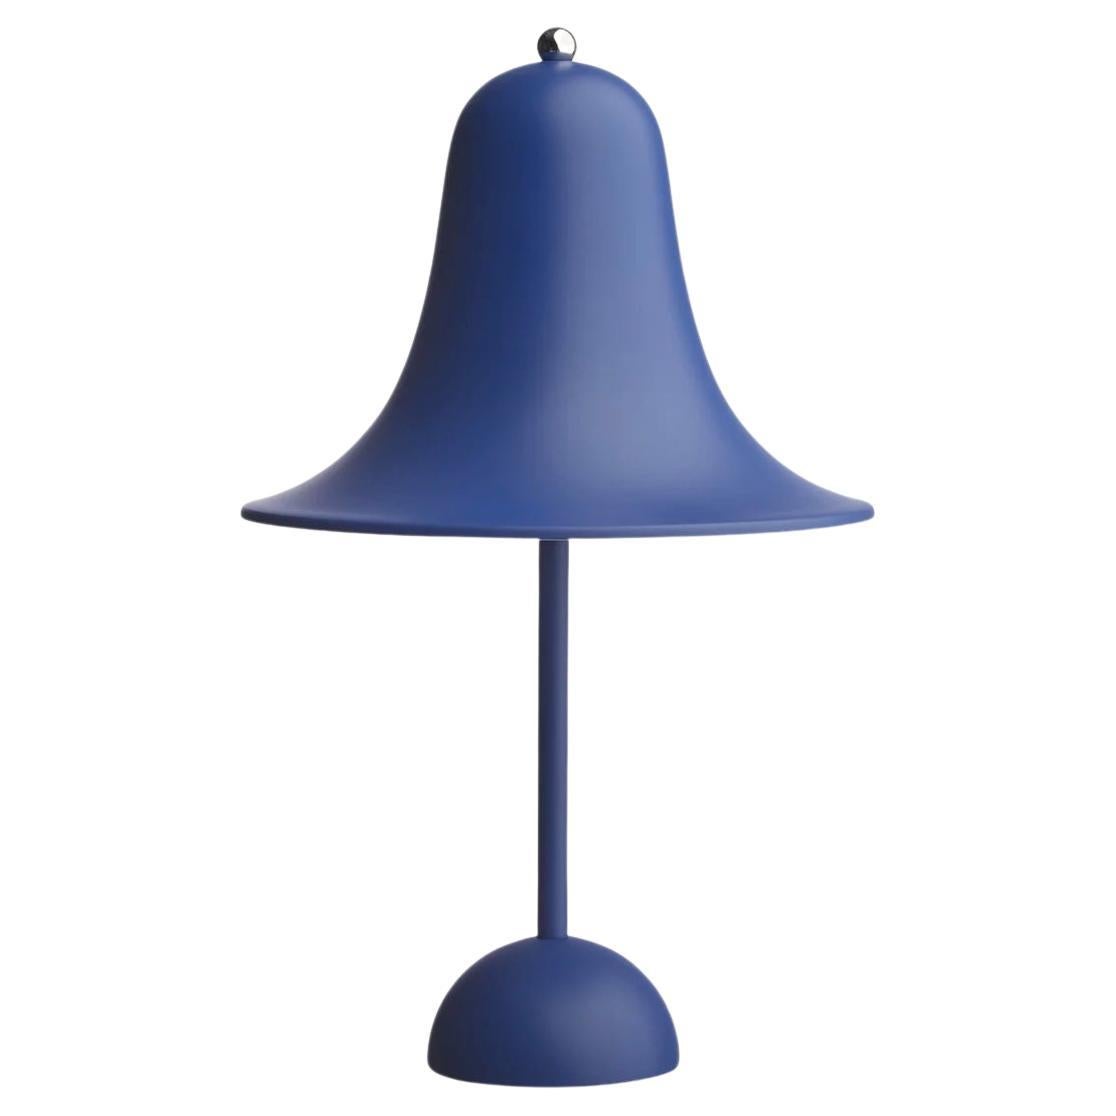 Verner Panton 'Pantop' Table Lamp in 'Matt Classic Blue' 1980 for Verpan For Sale